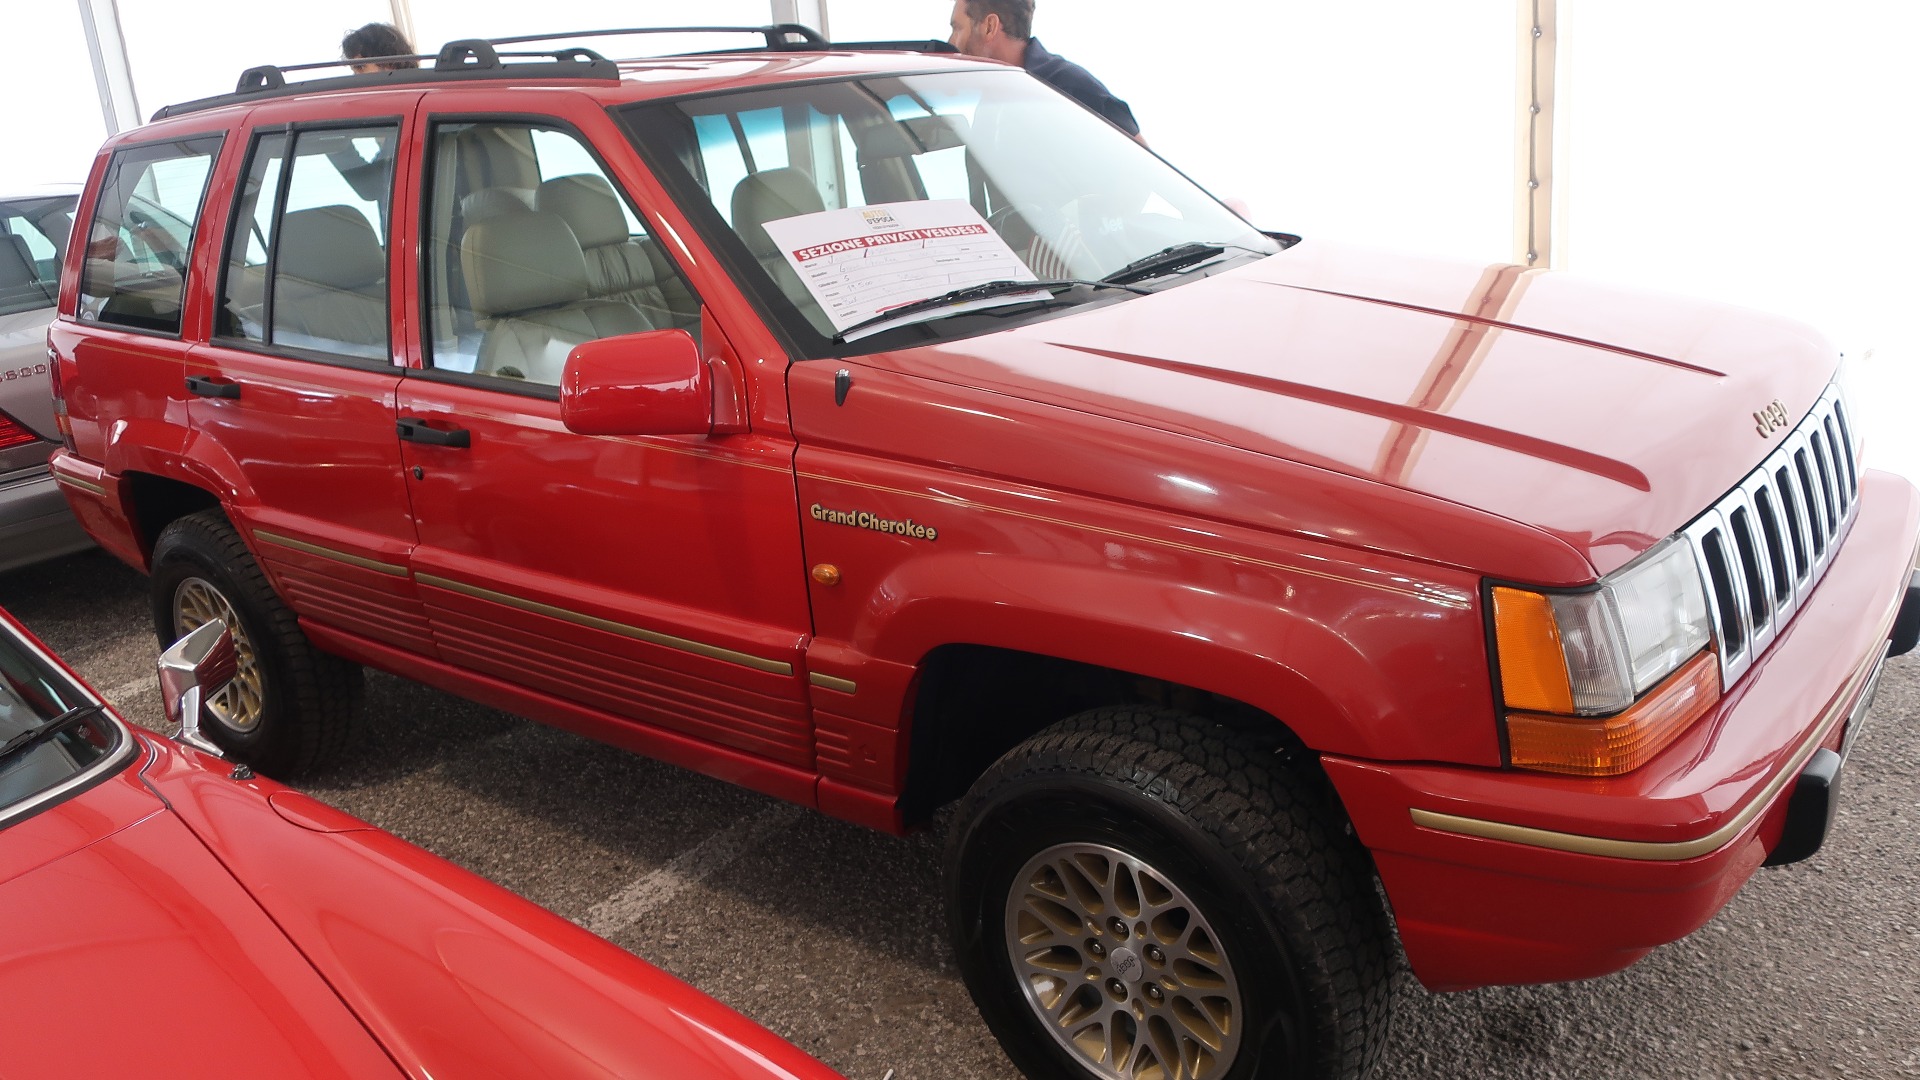 1995 Jeep Grand Cherokee V8 med 130.000 km på telleren, som var til salgs for 19.500 Euro. Litt stivt priset, men det stod også at prisen kunne diskuteres.